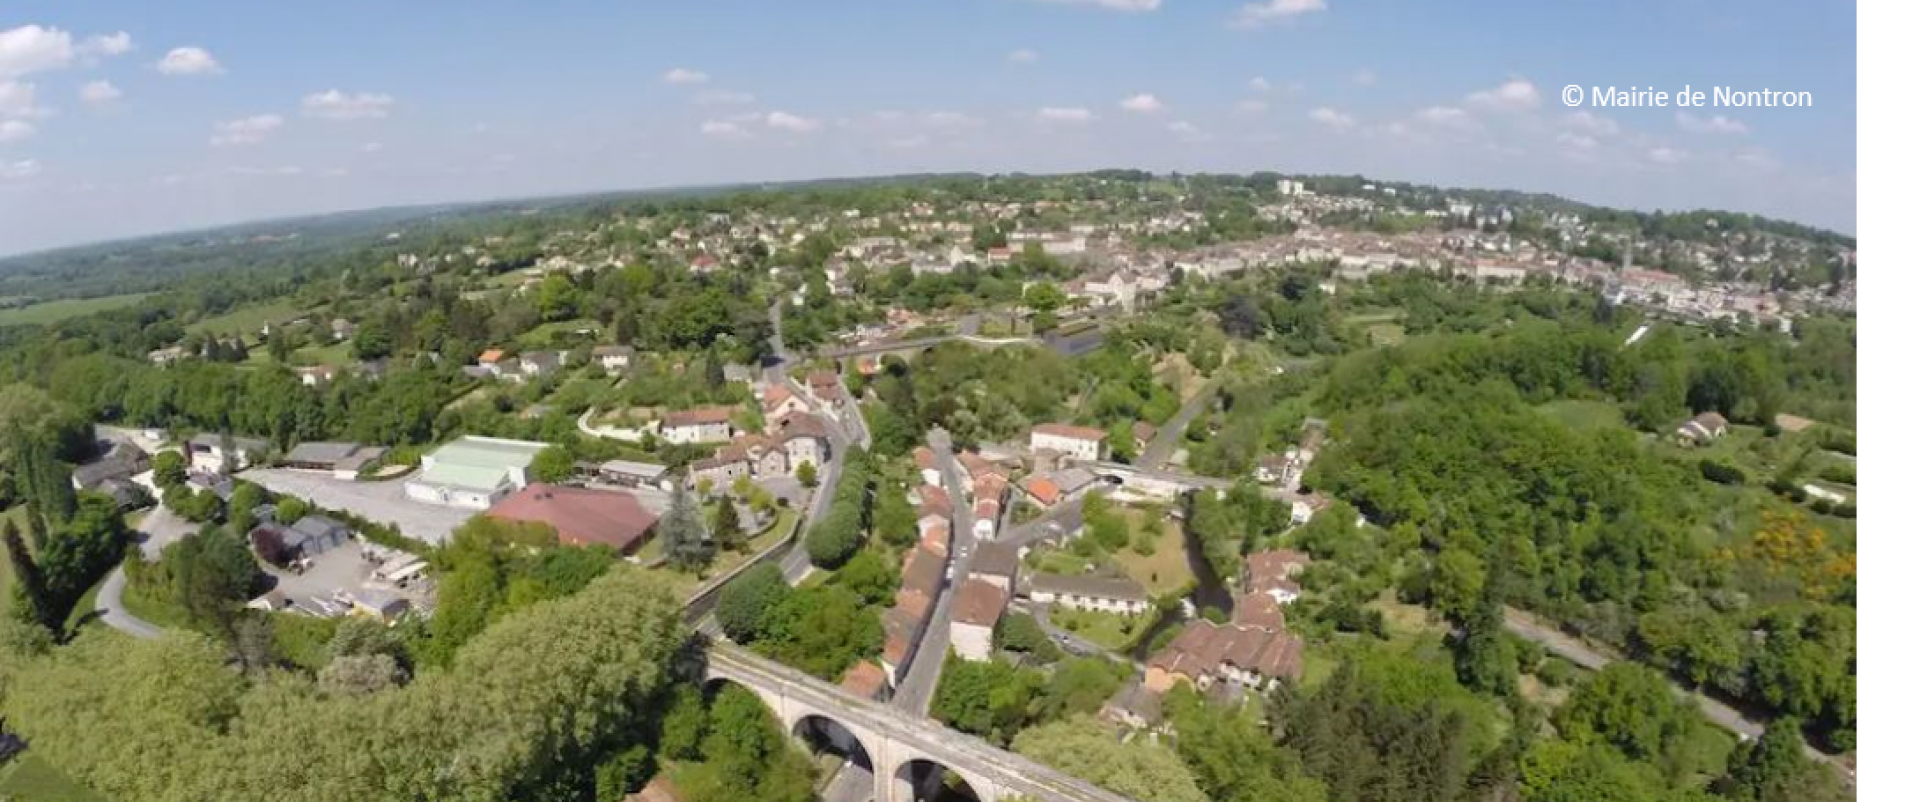 Photo aérienne de Nontron en Dordogne